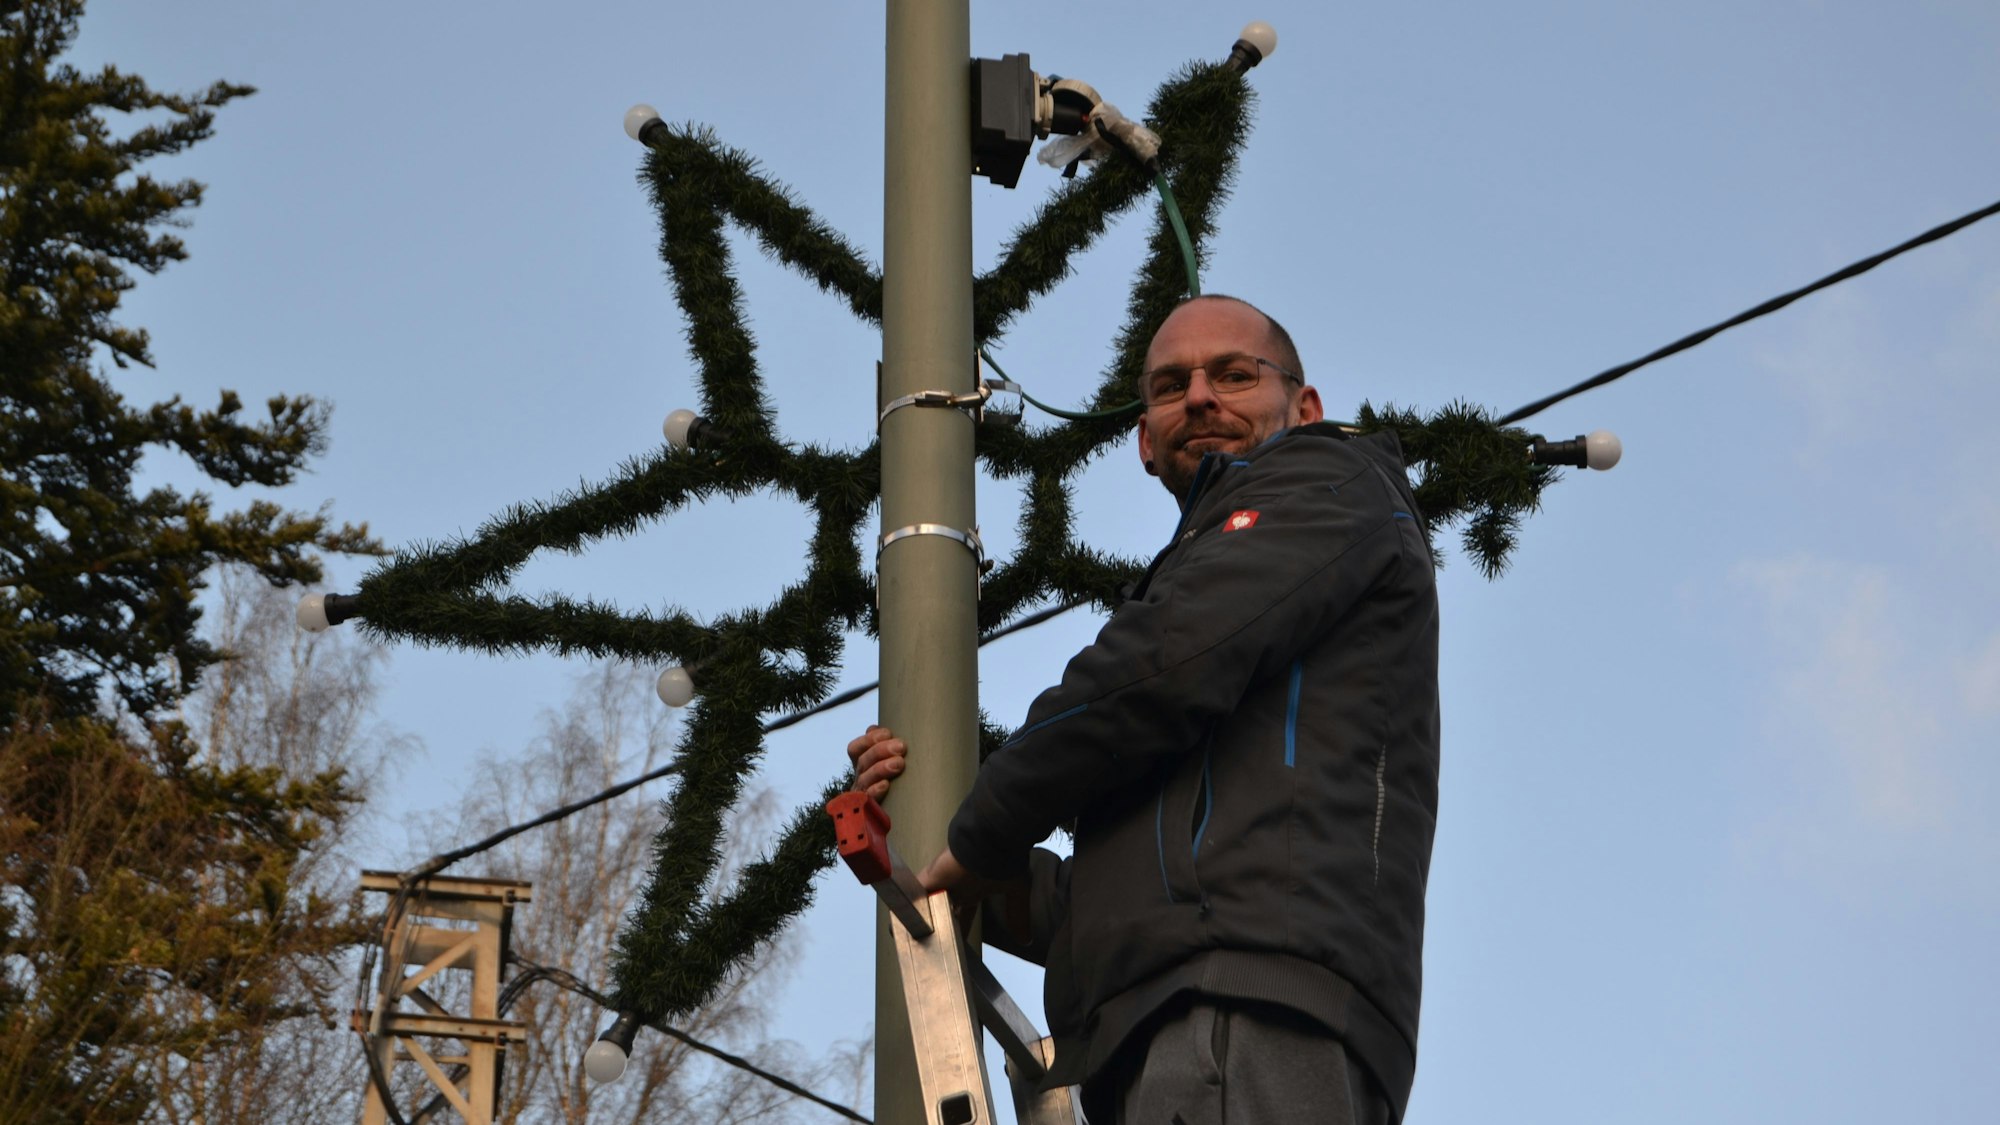 Auf einer Leiter in mehr als drei Metern Höhe steht Oliver Herrmann, der gerade einen Stern als Weihnachtsschmuck an die Straßenlaterne gehängt hat.